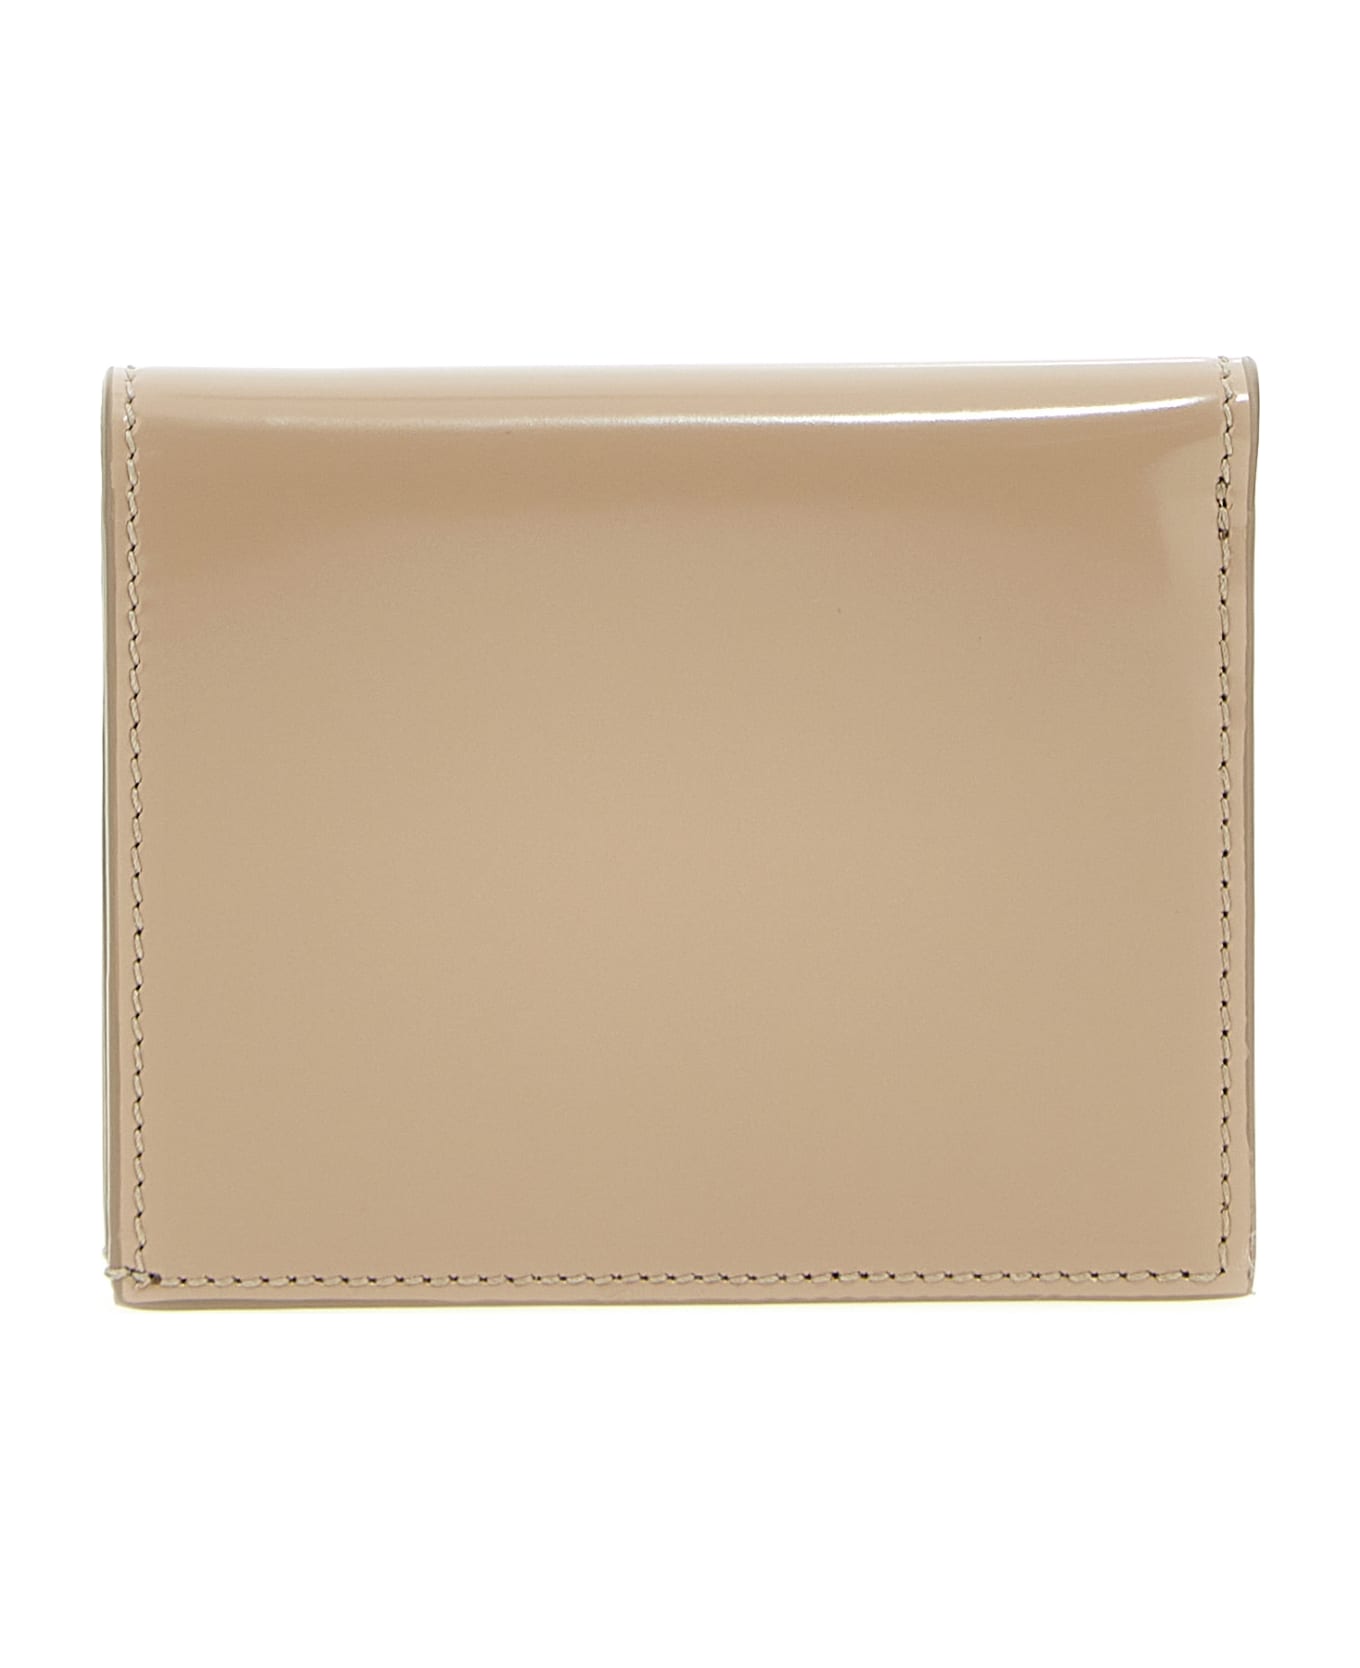 Ferragamo Patent Leather Wallet - Beige 財布